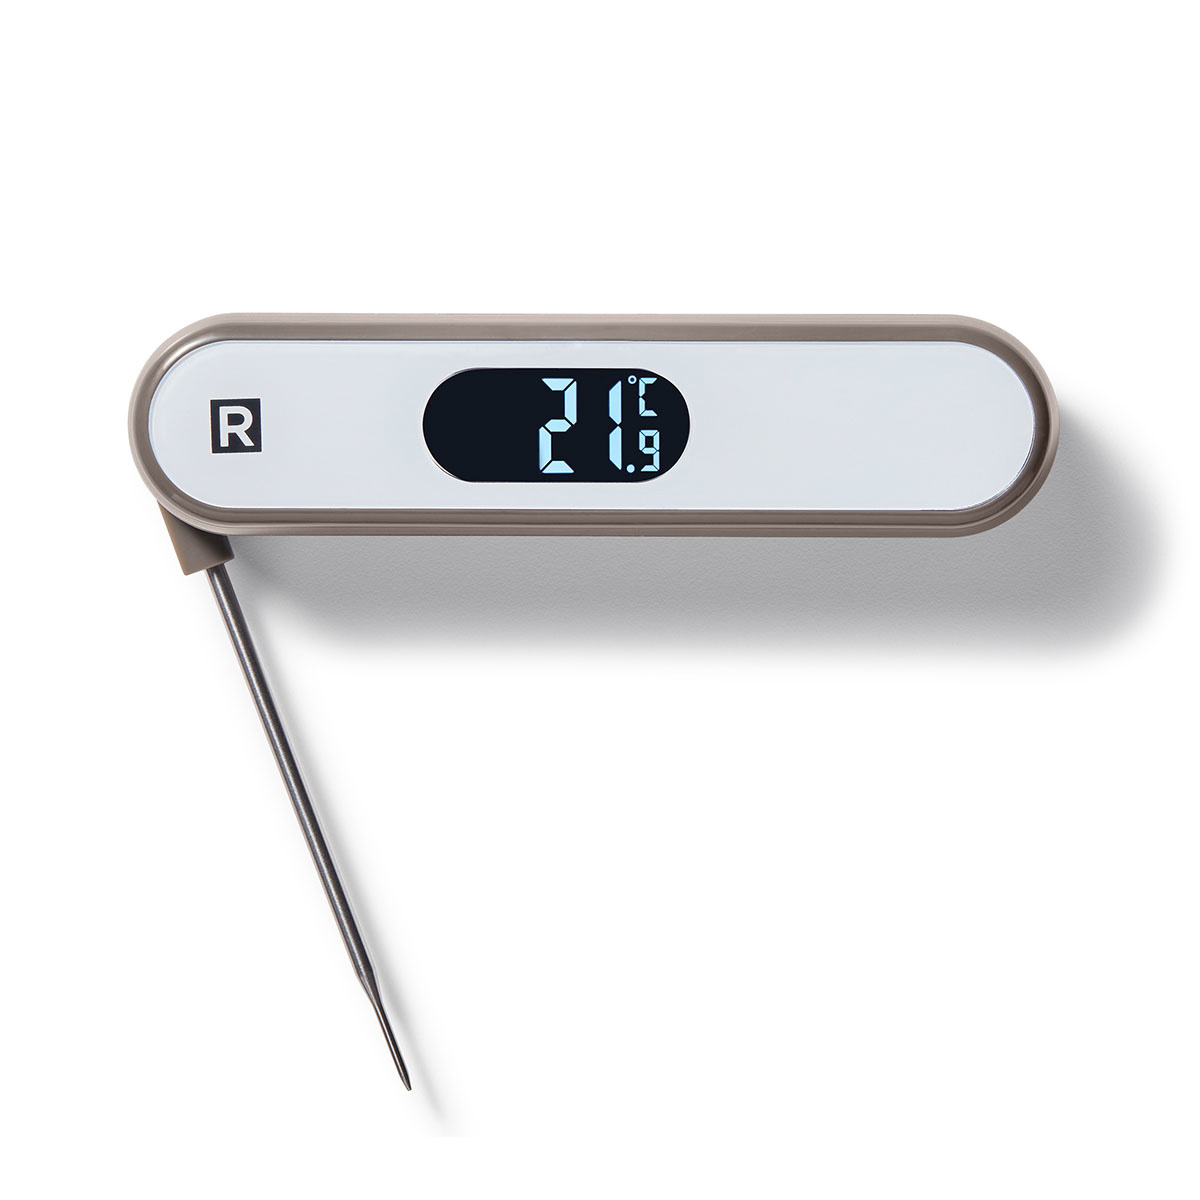 Thermomètre avec sonde fine repliable - Matériel de laboratoire